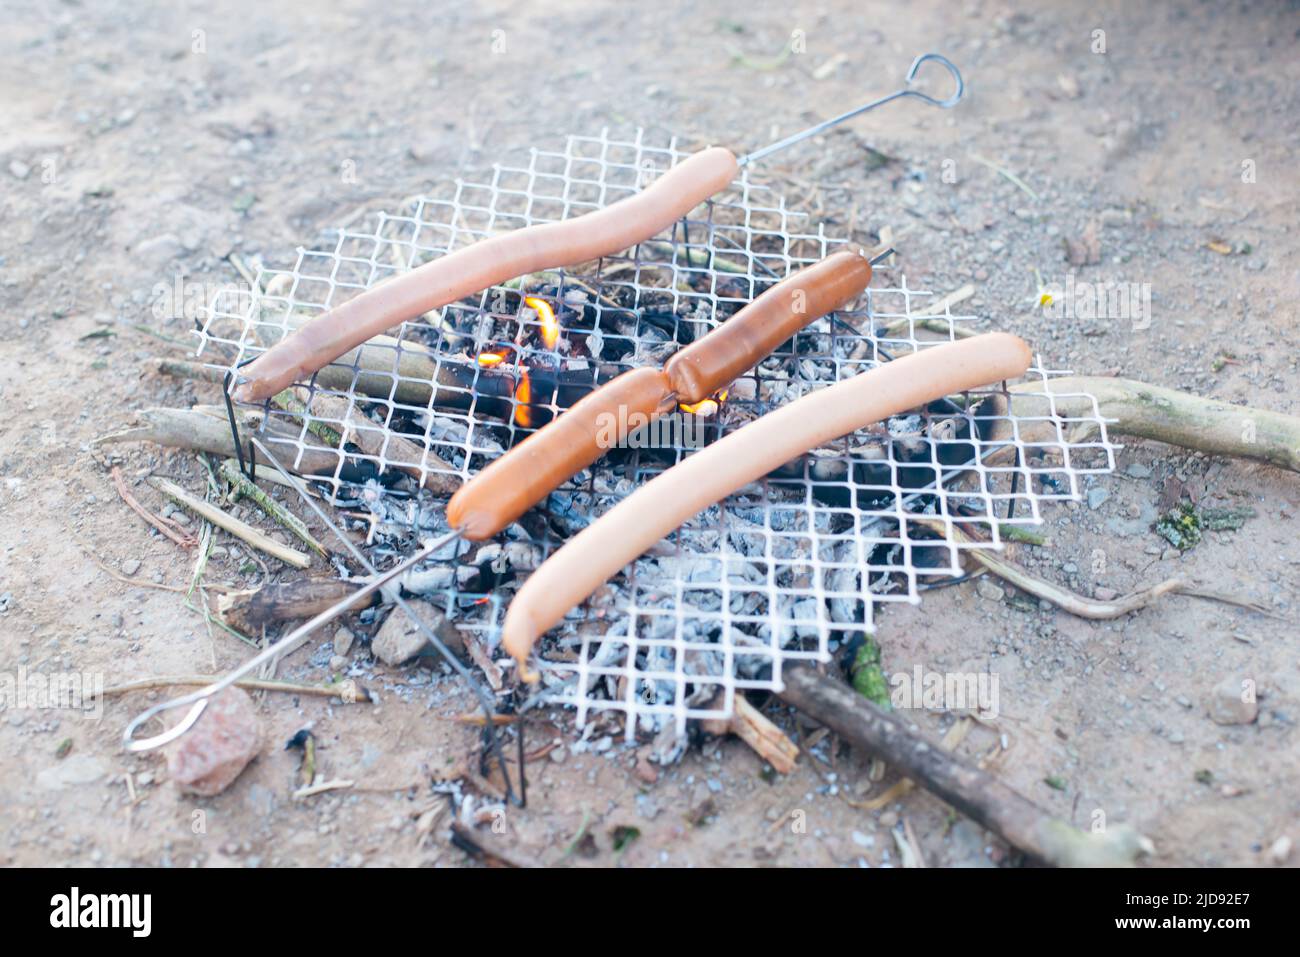 Hot-Dog-Wurst am Lagerfeuer, Zubereitung von Speisen in der Wildnis, Buschhandwerk und Überlebenskonzept, gegrilltes Fleisch, Urlaubsreise Stockfoto